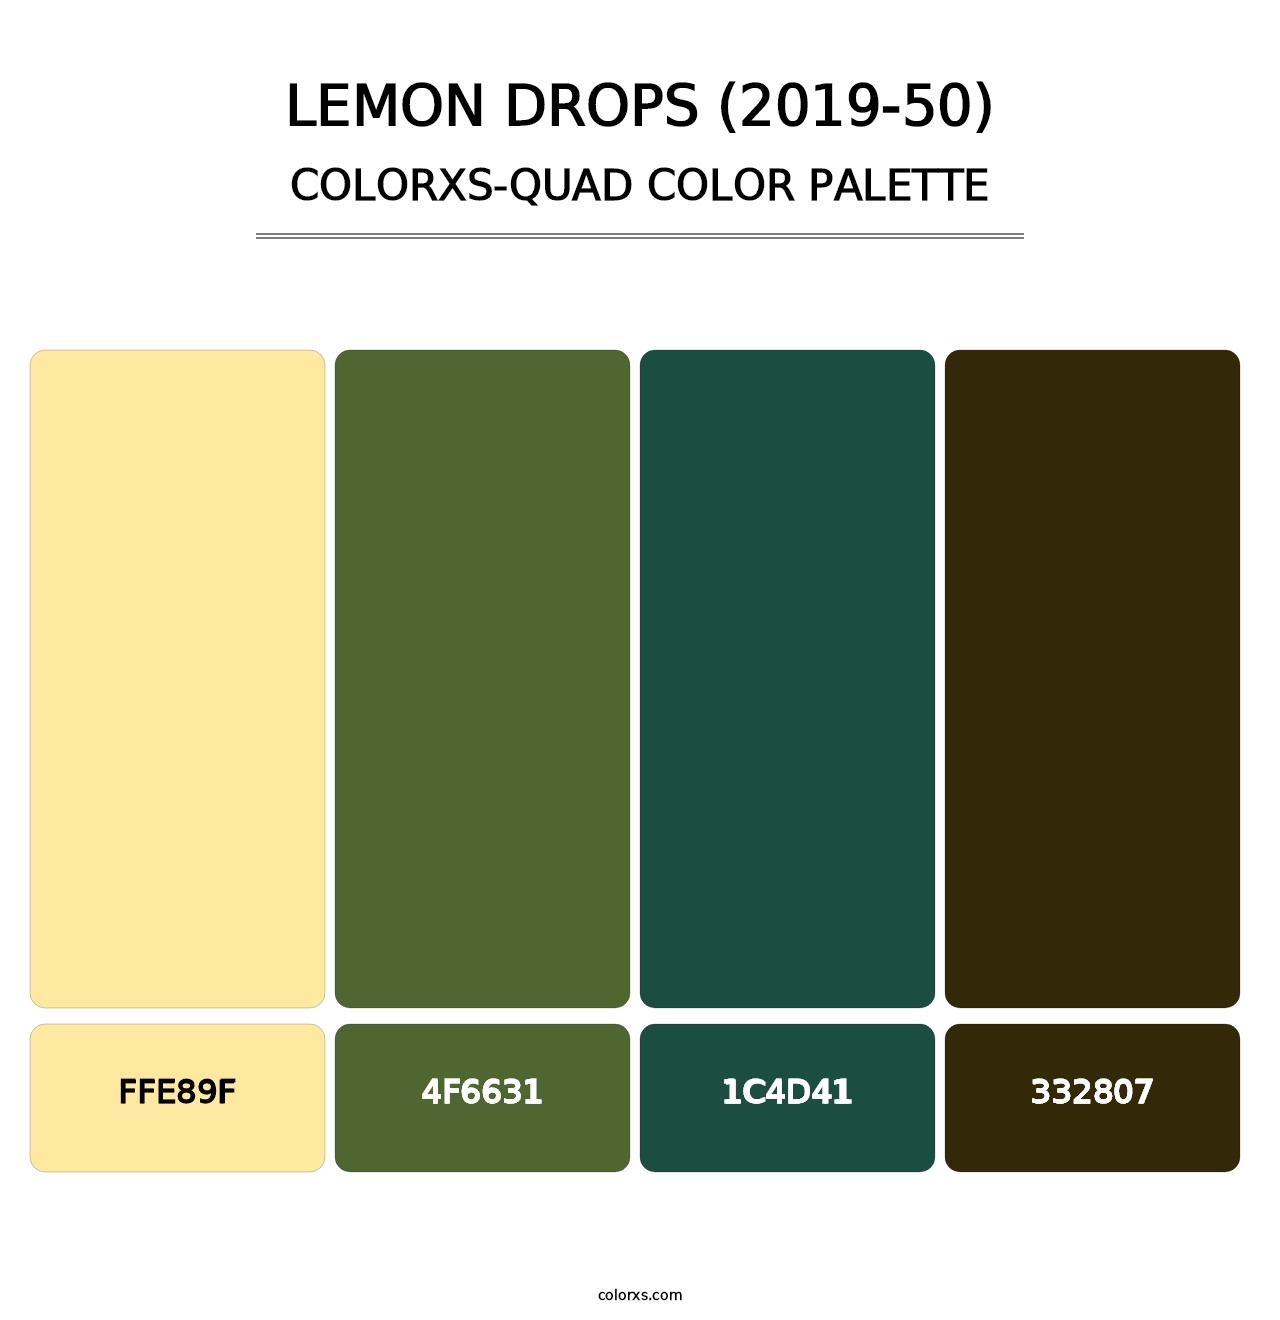 Lemon Drops (2019-50) - Colorxs Quad Palette